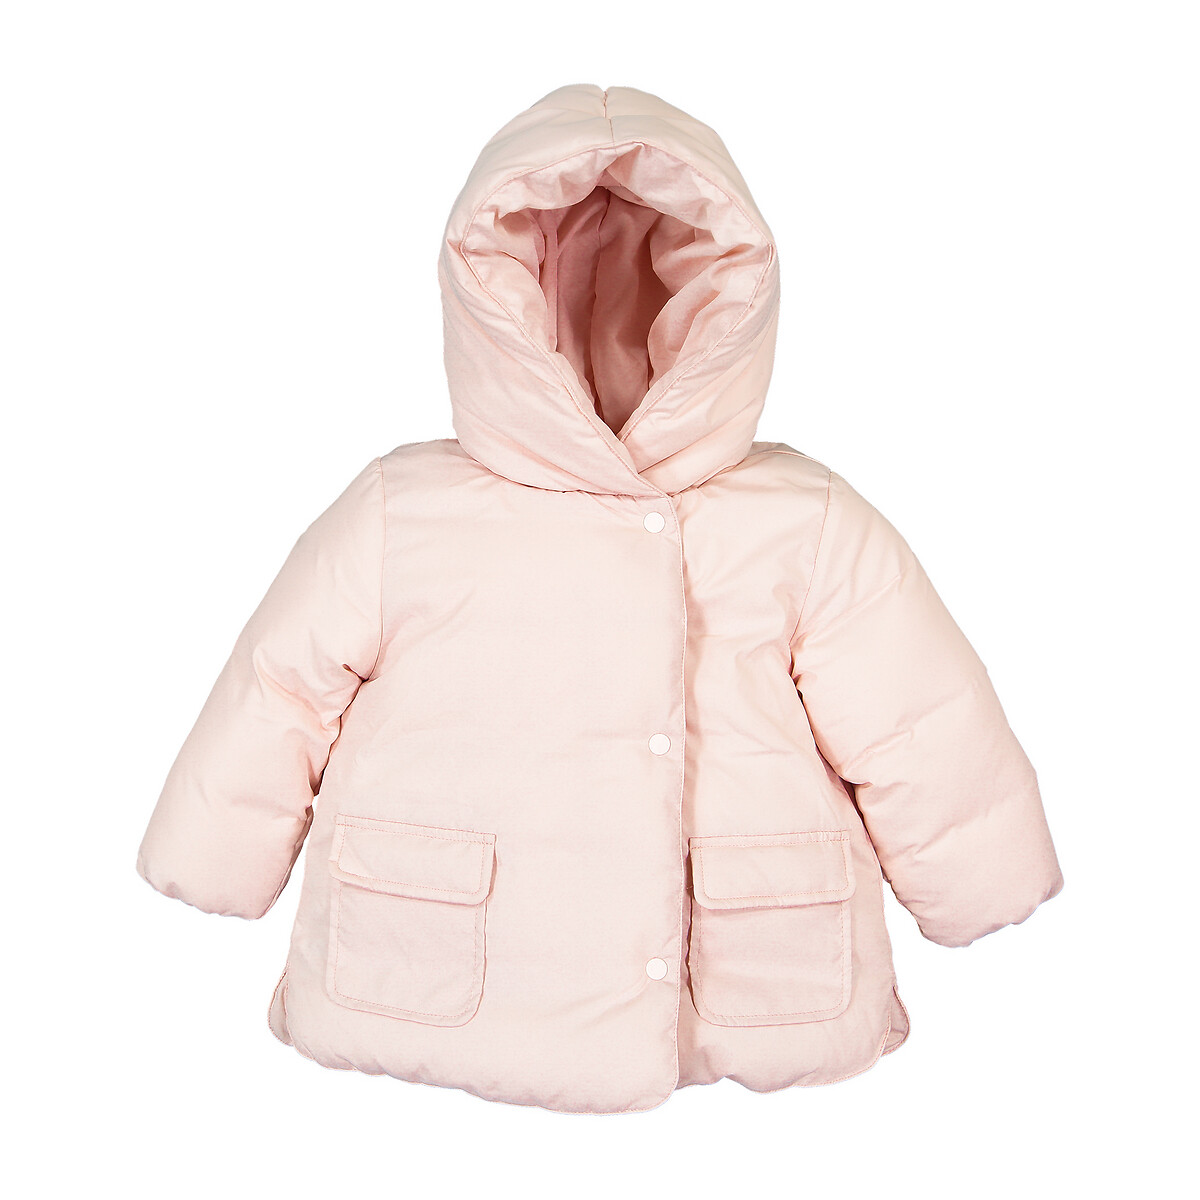 Куртка La Redoute Стеганая утепленная с капюшоном 3 мес-4 года 6 мес. - 67 см розовый, размер 6 мес. - 67 см